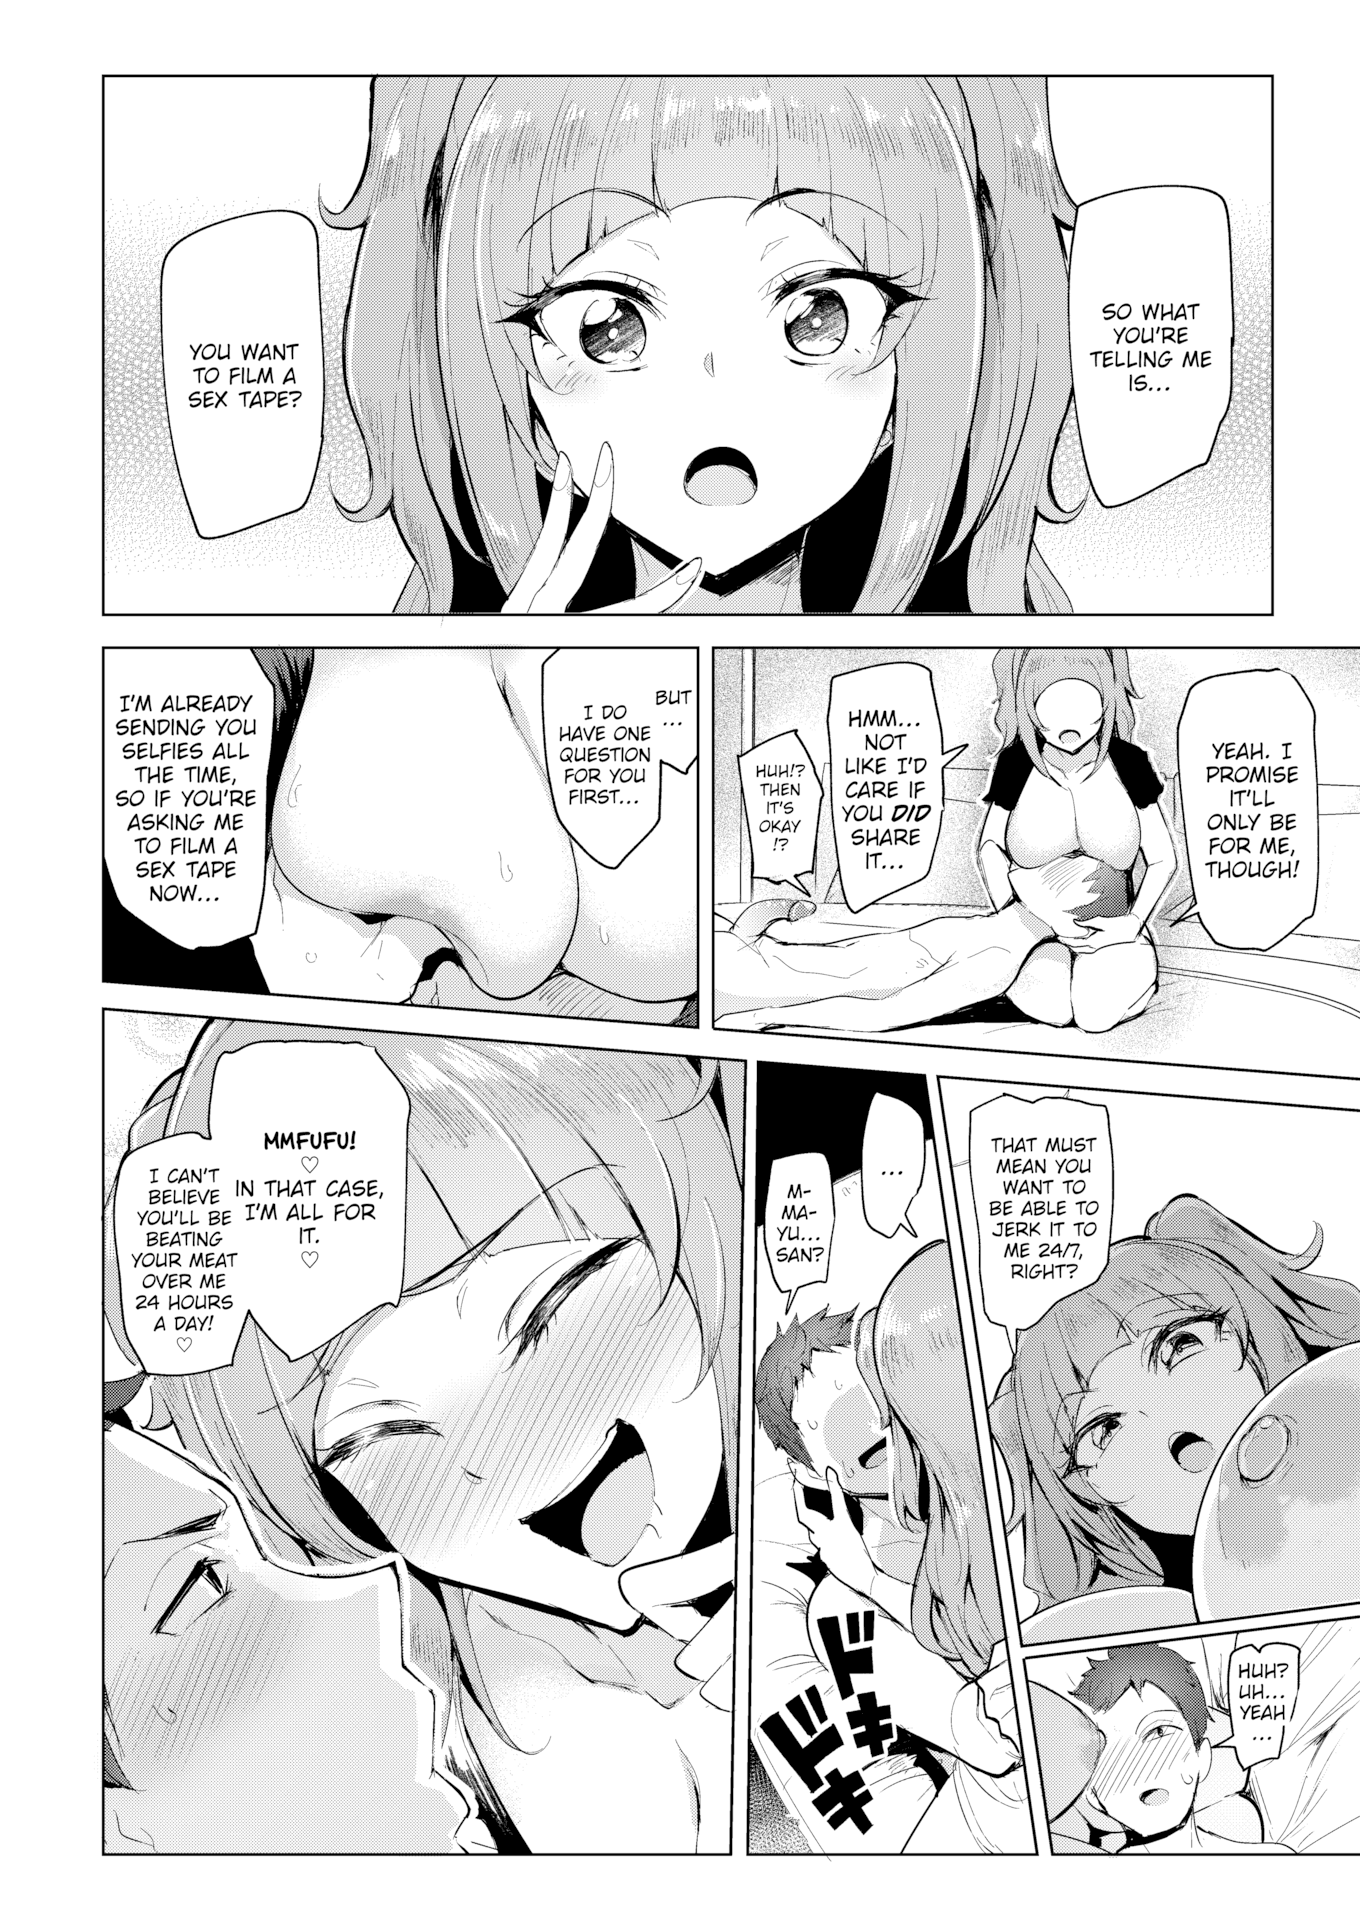 Sian homemade sextapes feel great hentai manga